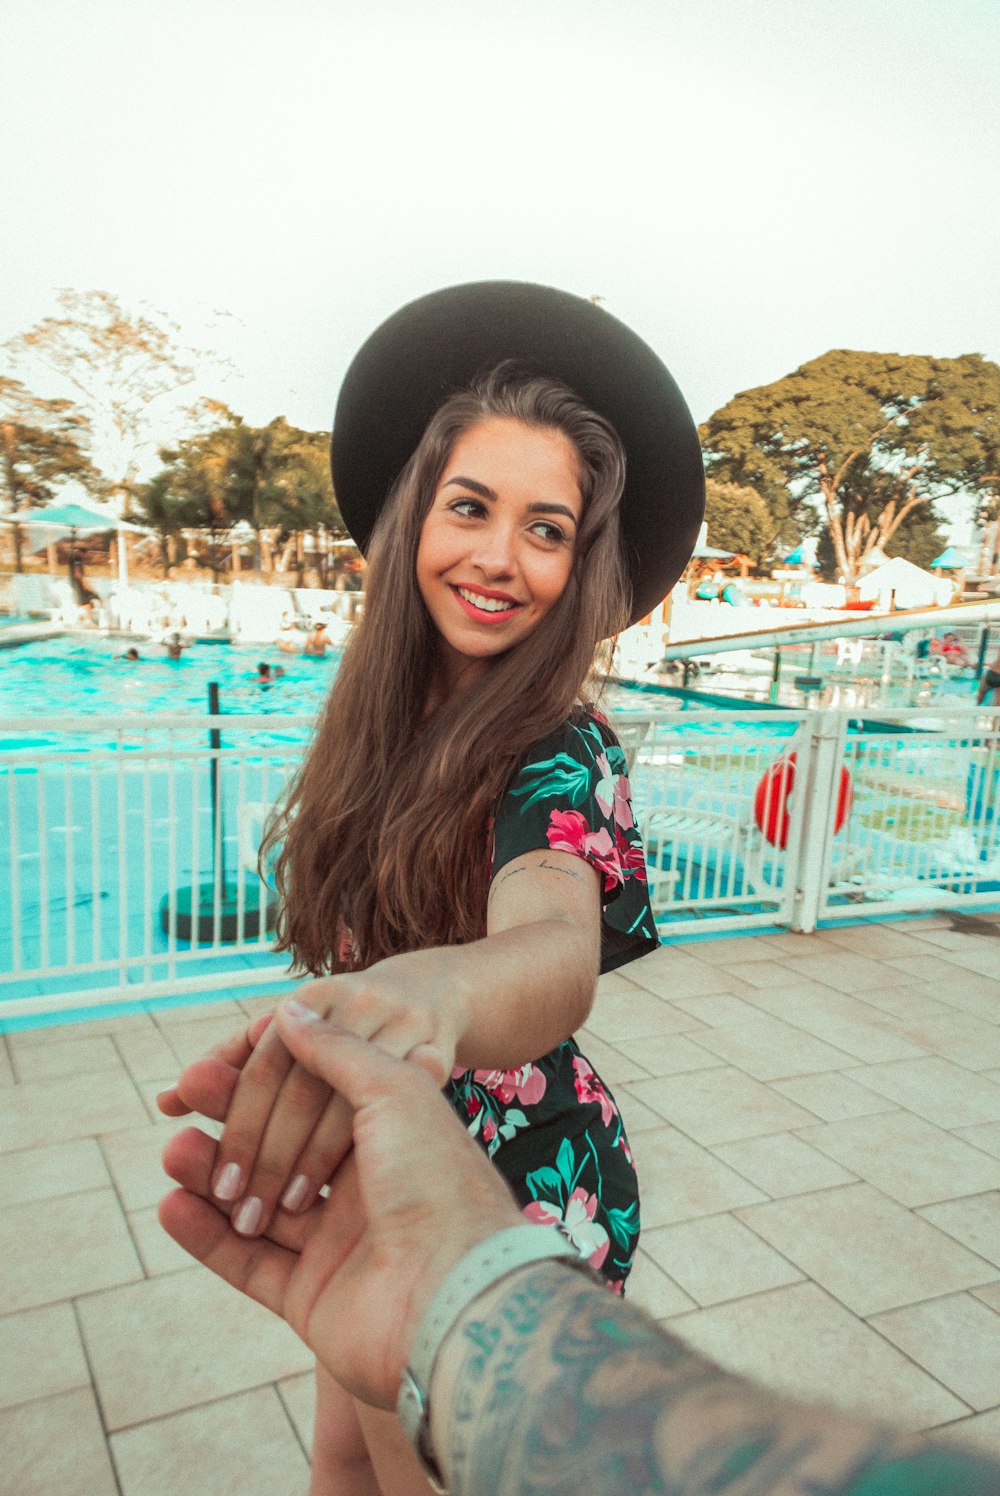 Frau steht und lächelt, während sie Händchen einer anderen Person in der Nähe des Schwimmbades hält